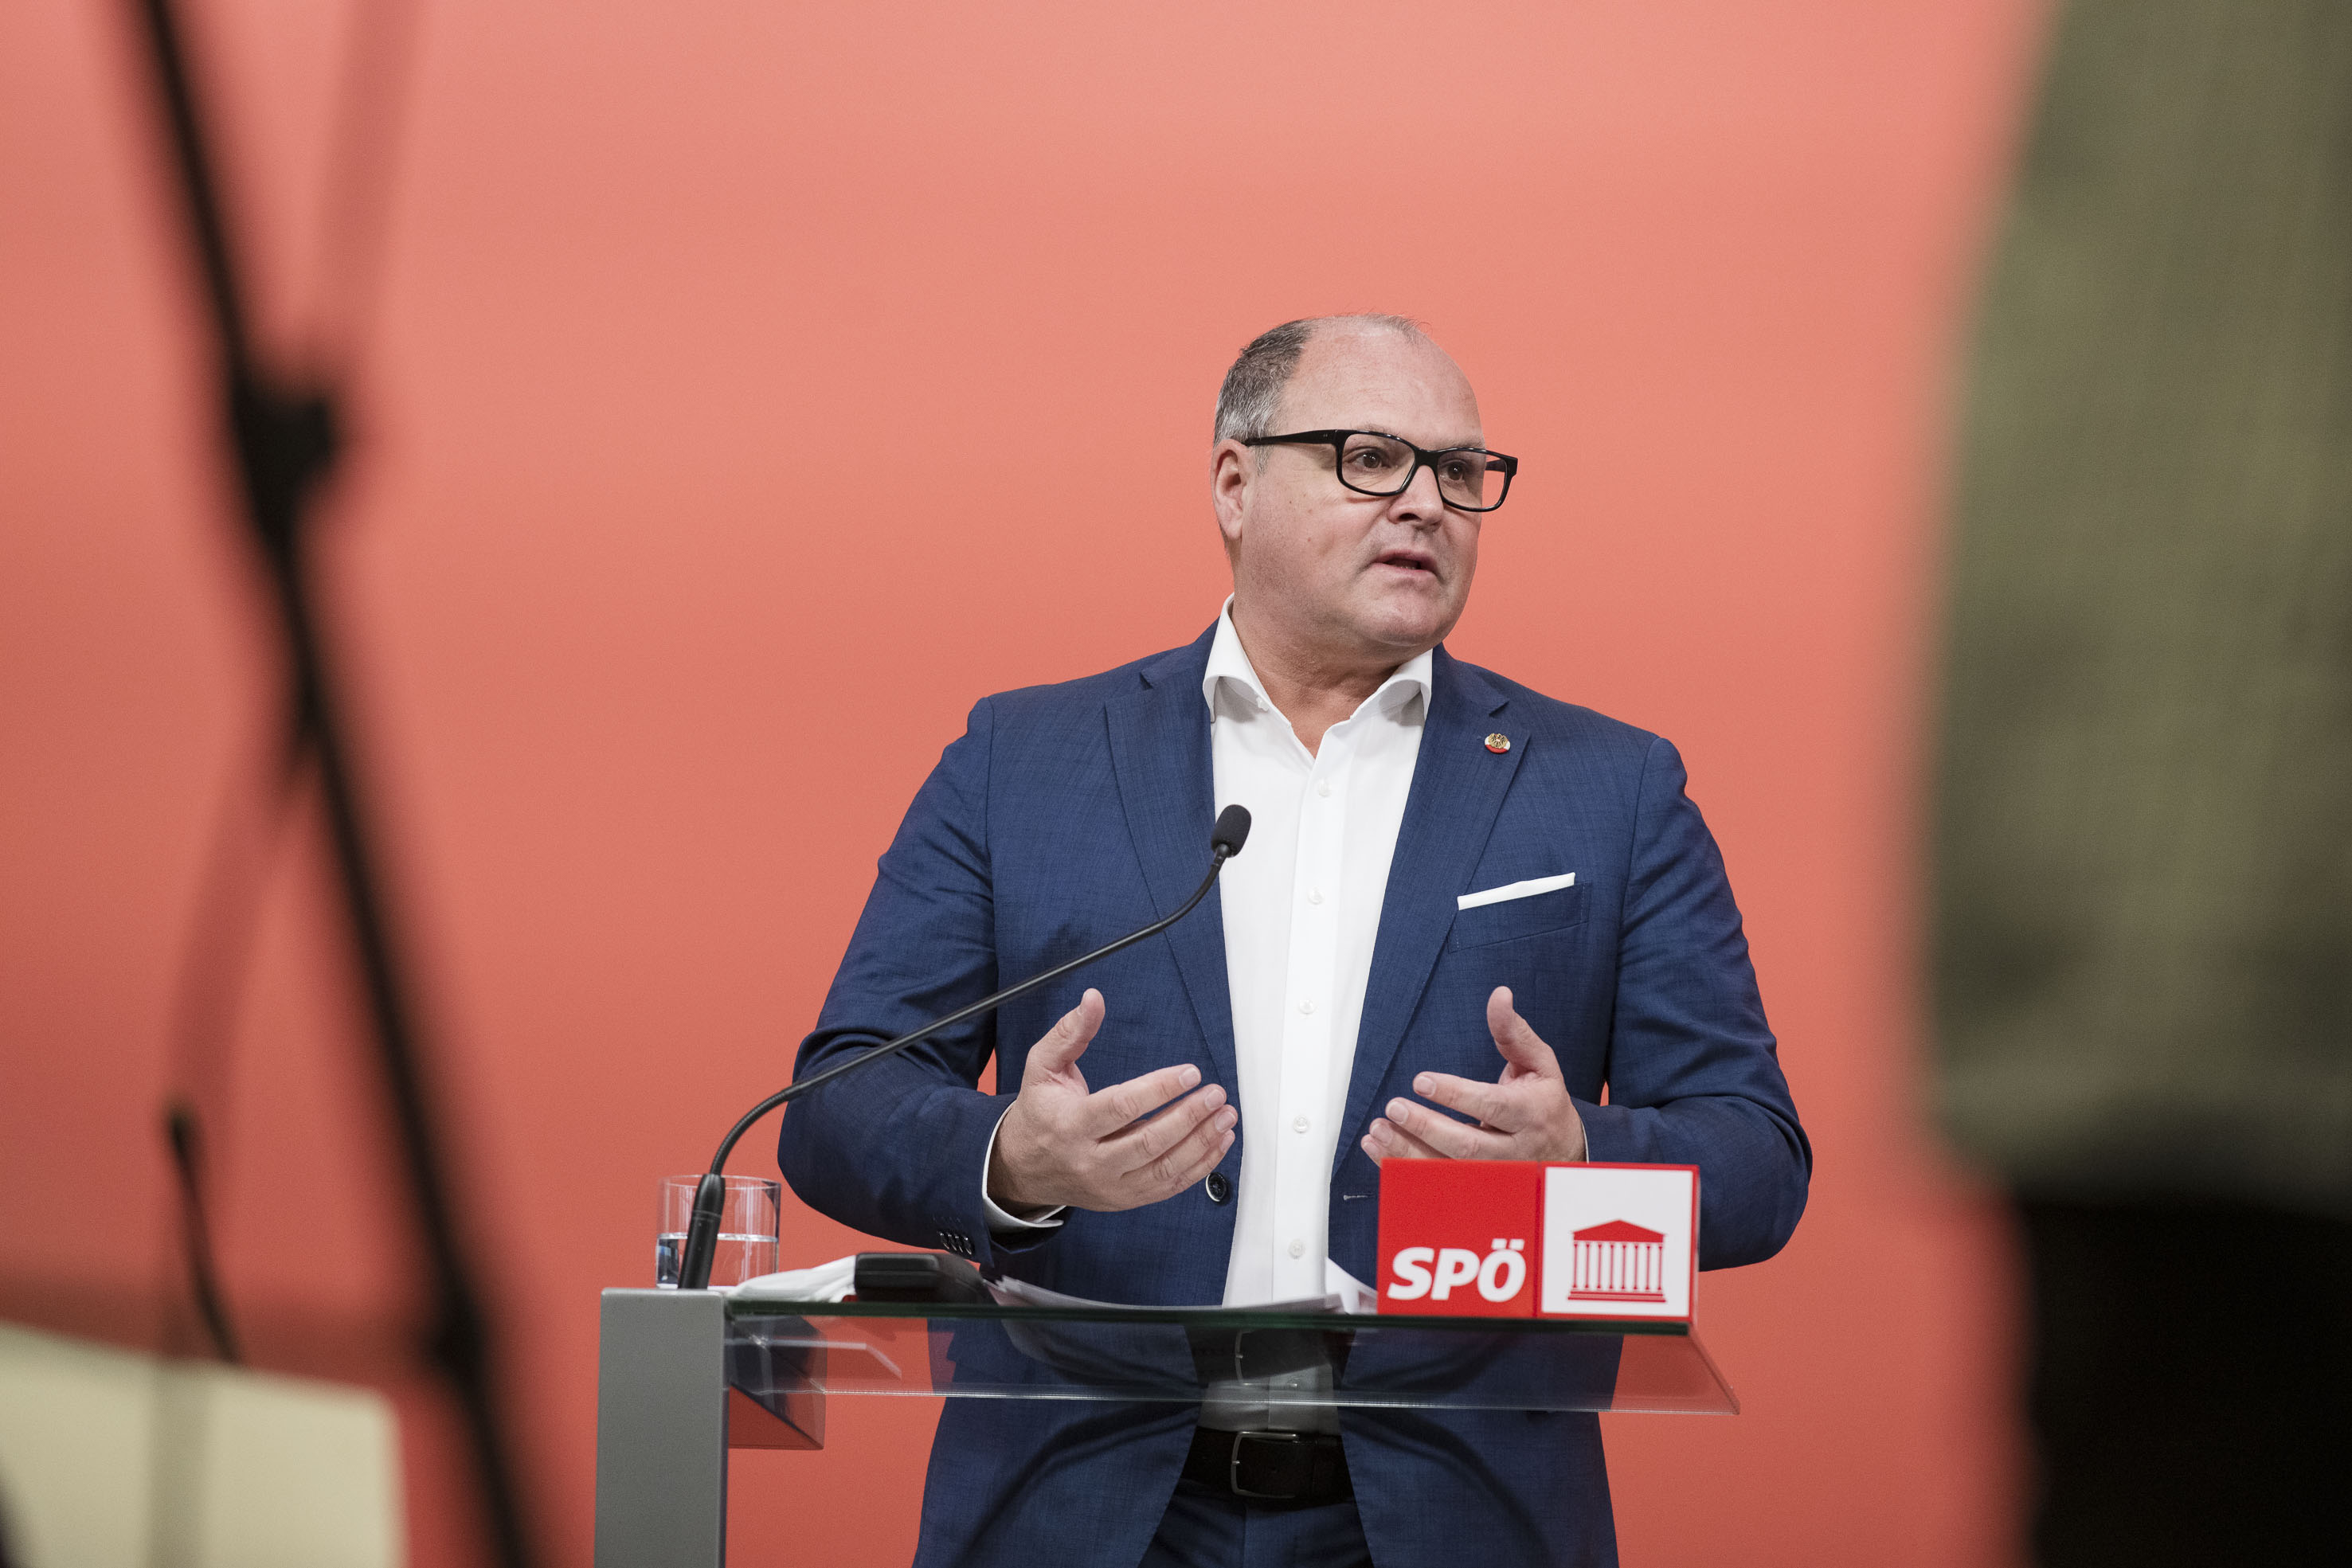 AVISO – Morgen, Donnerstag, 9.30 Uhr: „Rotes Foyer“ zu Rekordteuerung mit SPÖ-Sozialsprecher Muchitsch und SPÖ-Energiesprecher Schroll